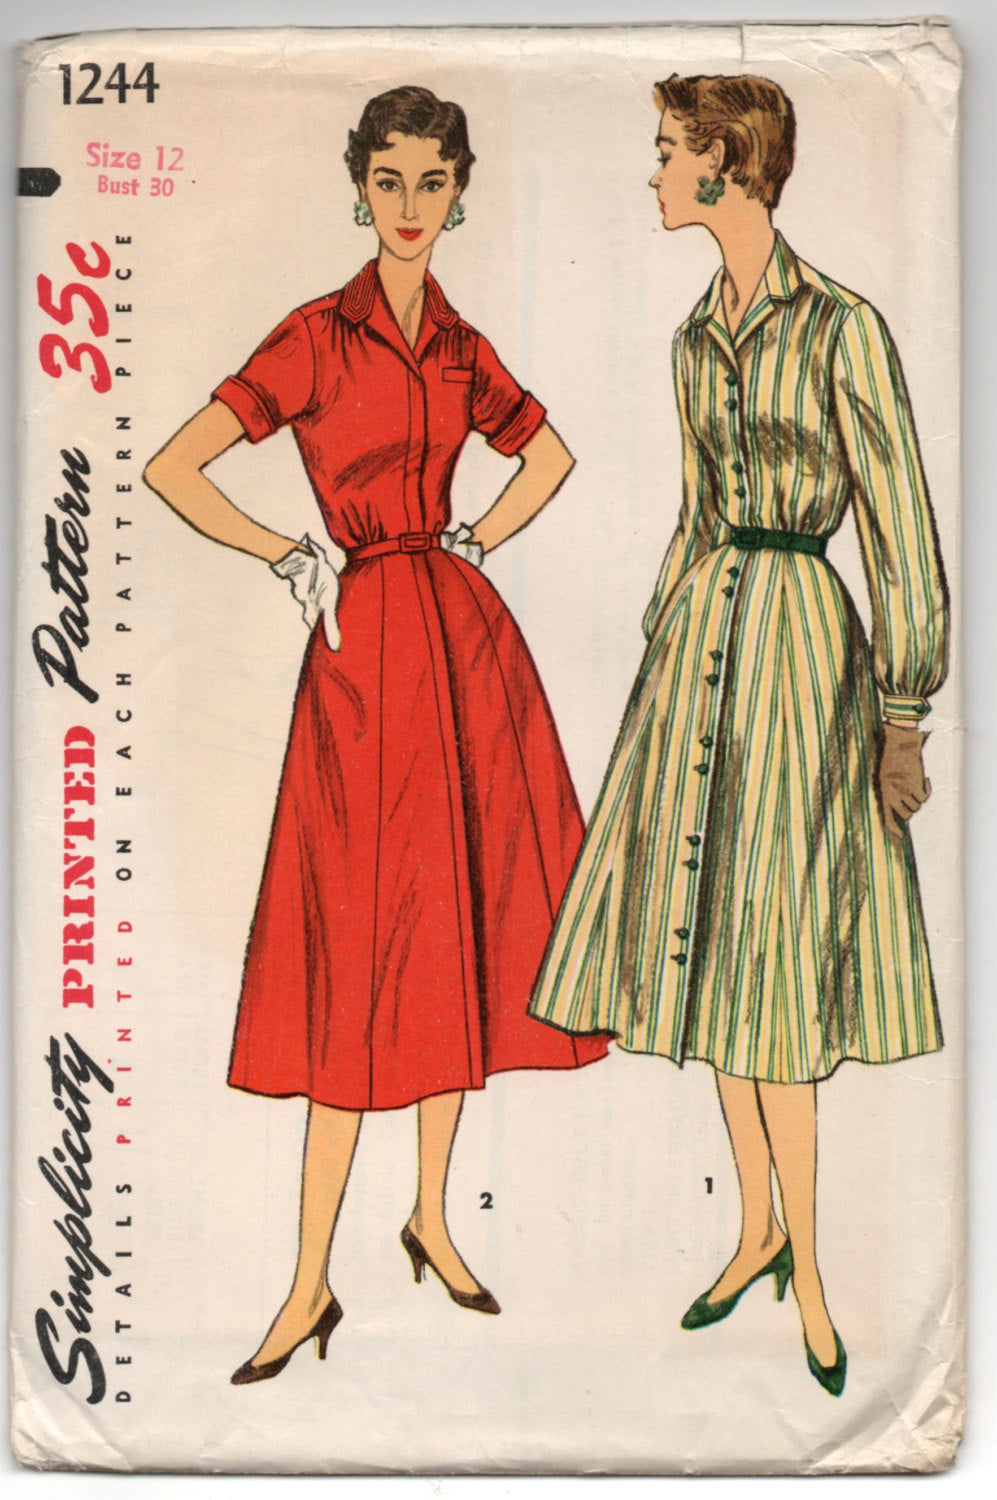 1950's Simplicity One-Piece Shirtwaist Dress with High Neck - UC/FF - Bust 30